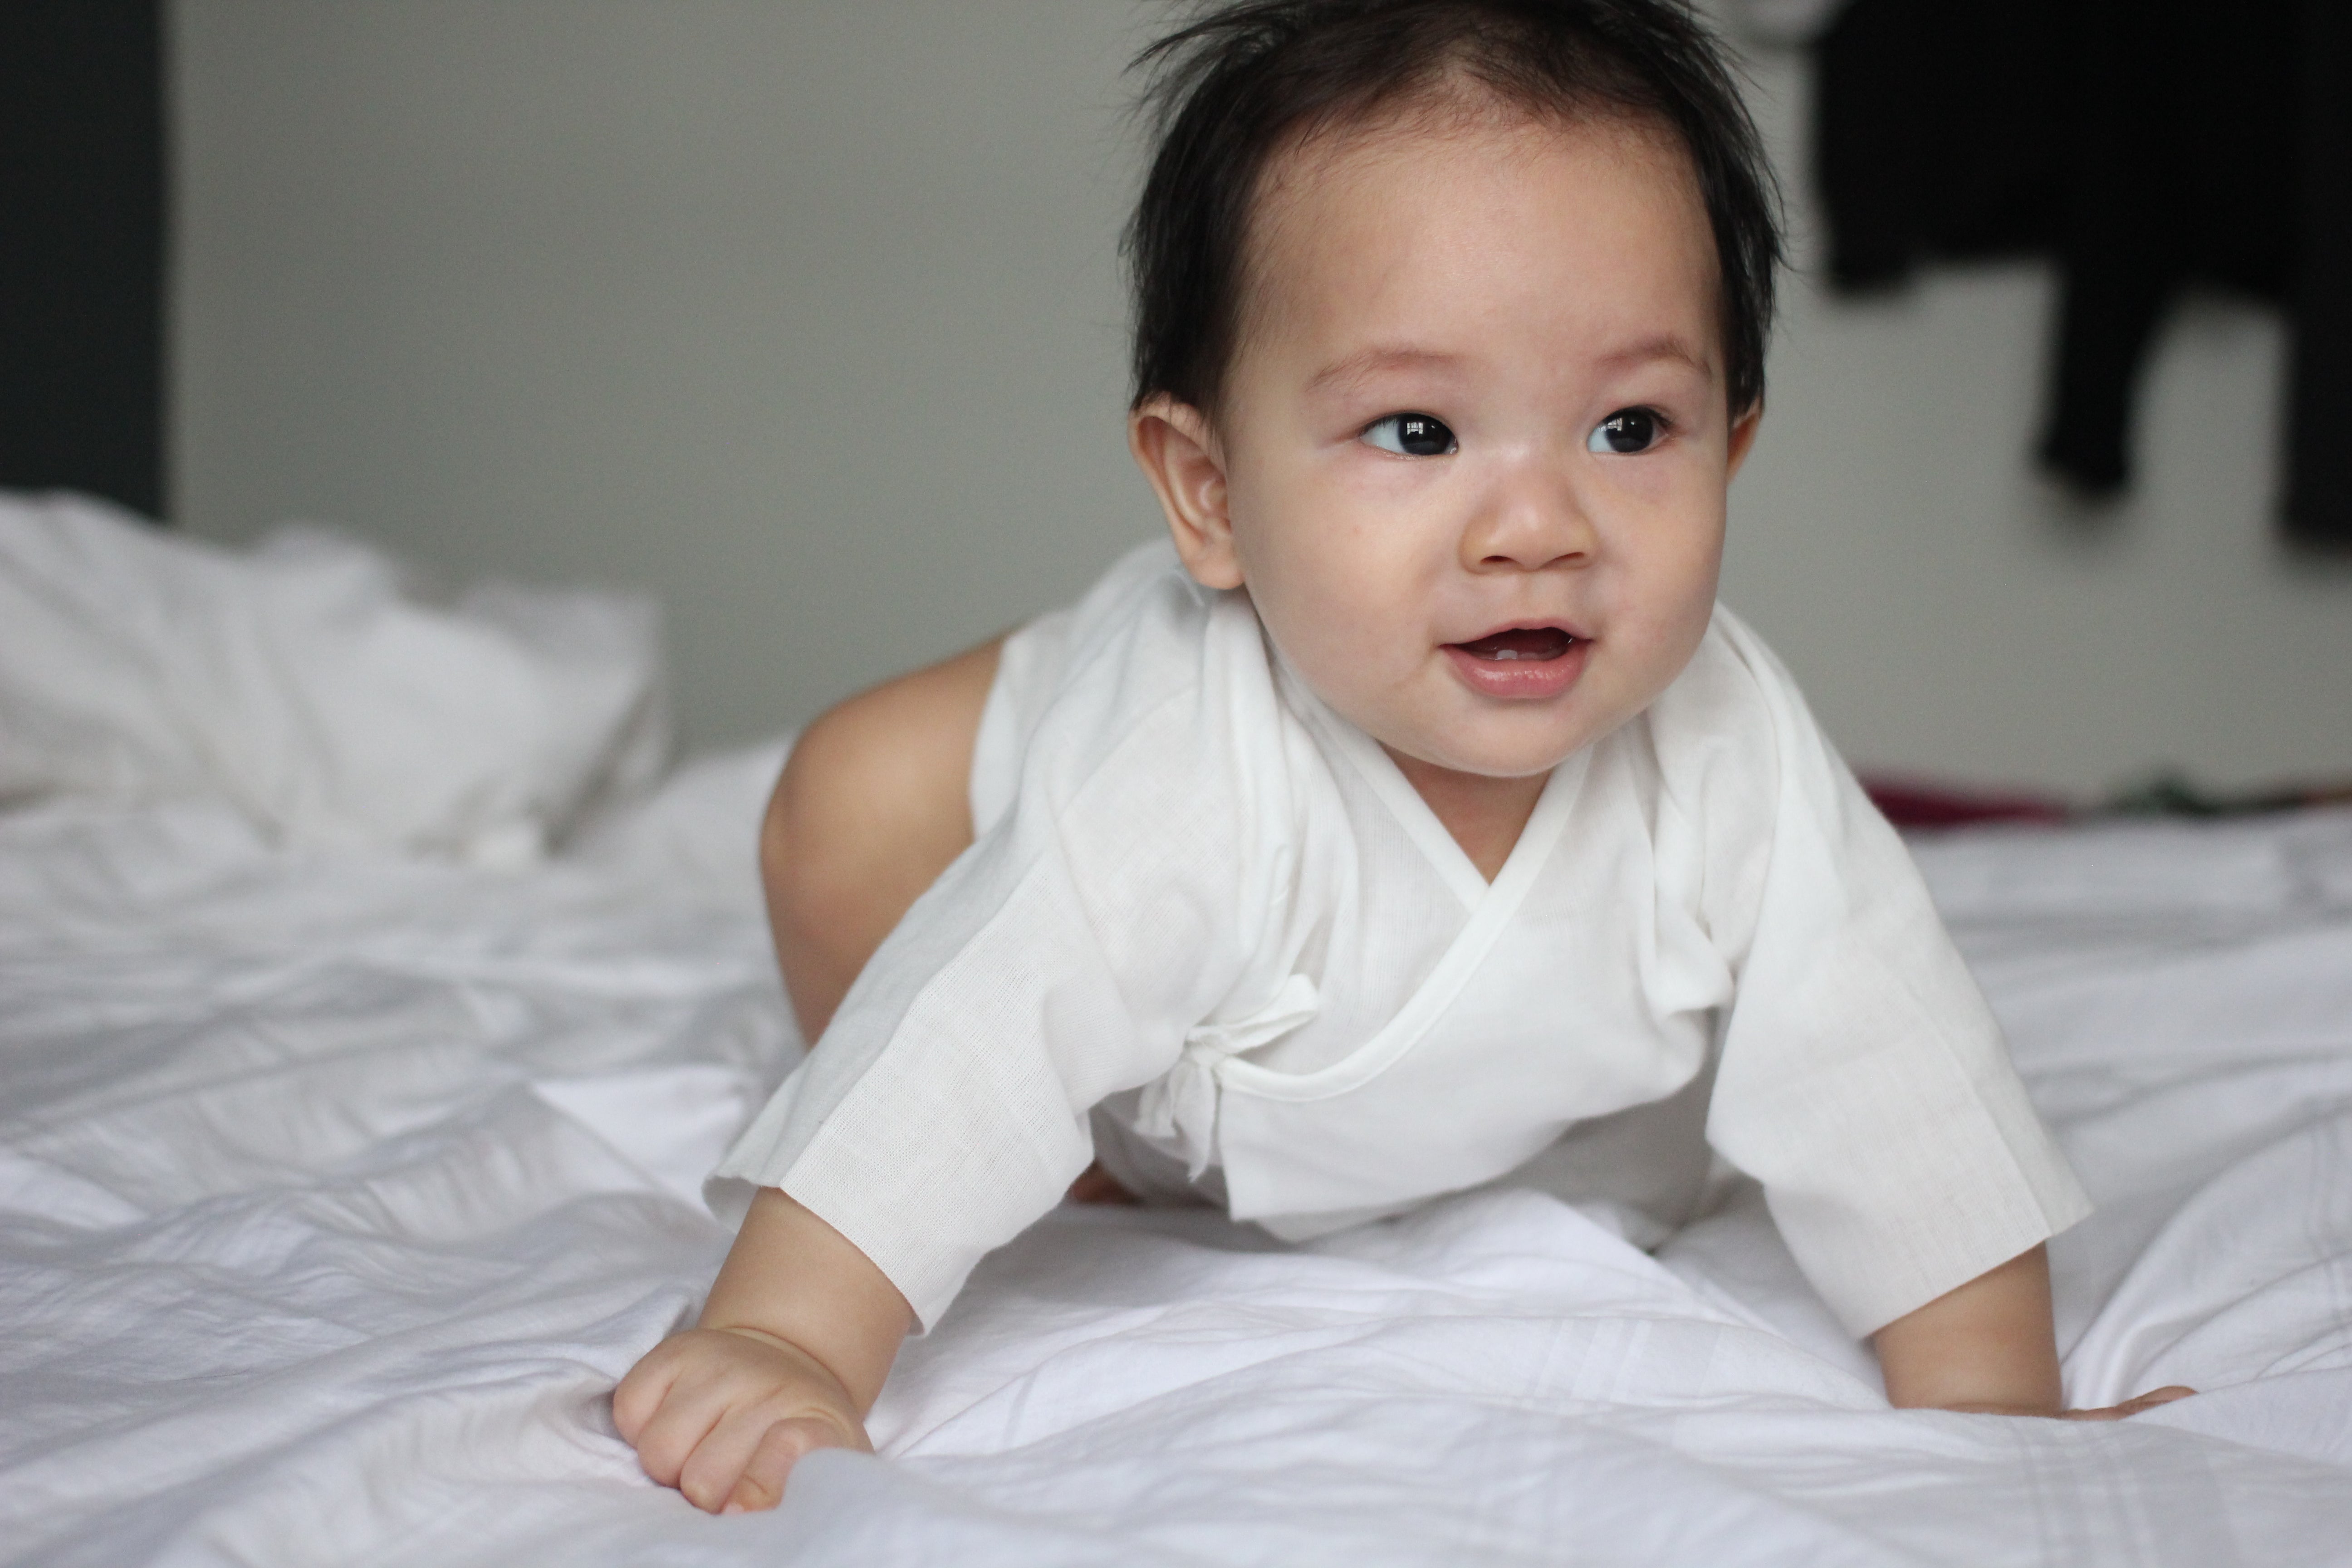 Suzuran Baby Gauze Undershirt – Made for Newborn Baby